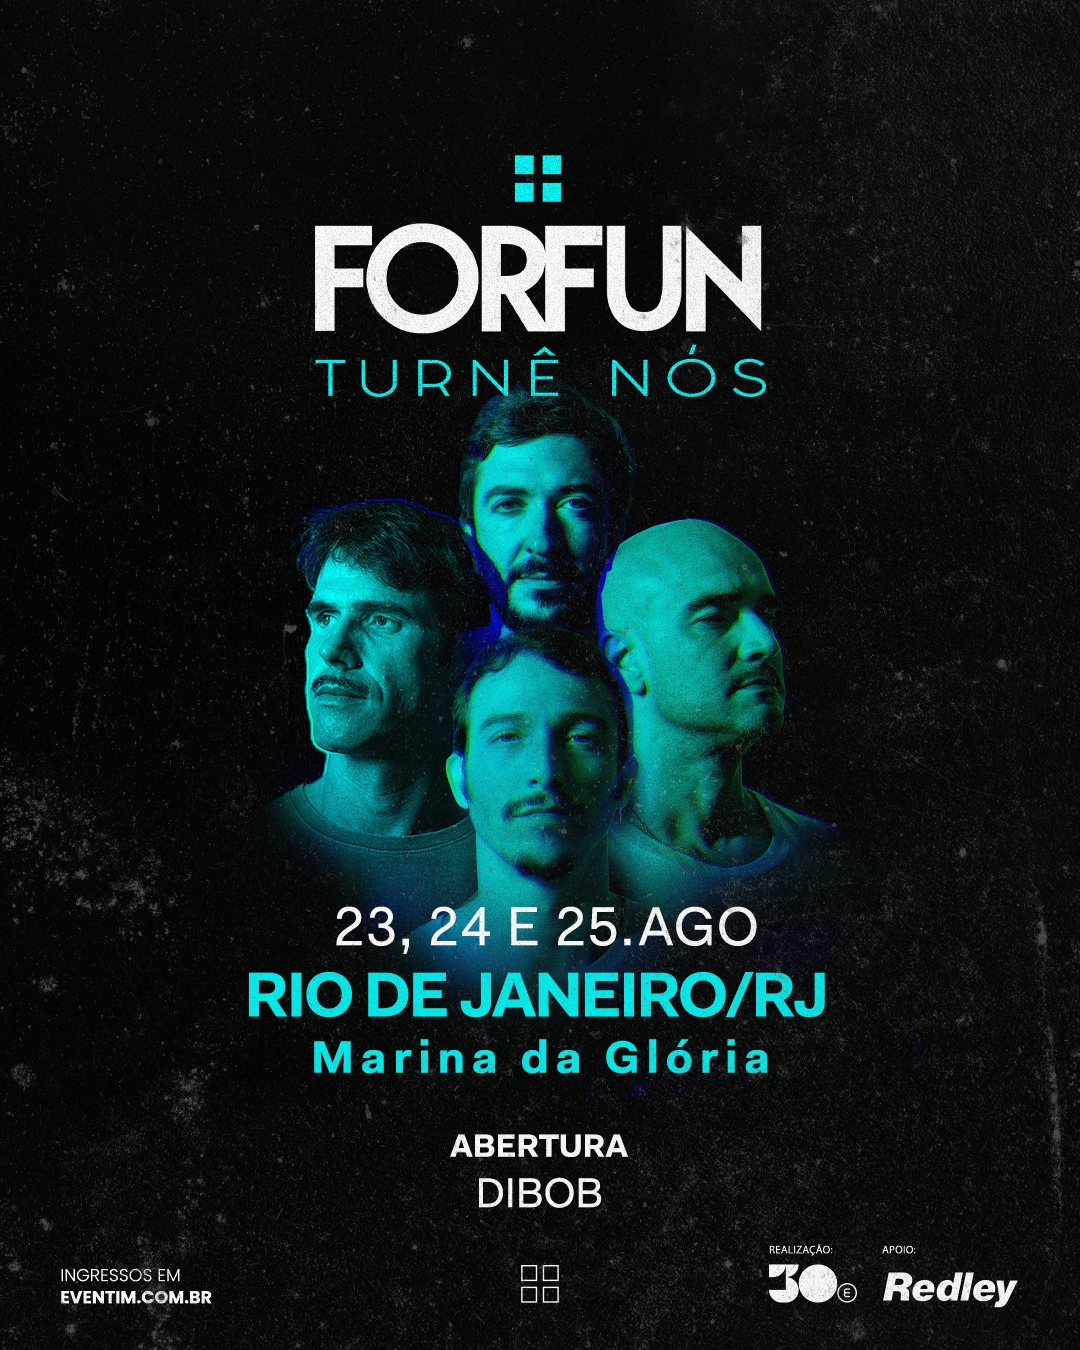 Forfun anuncia show de abertura para apresentações no Rio de Janeiro